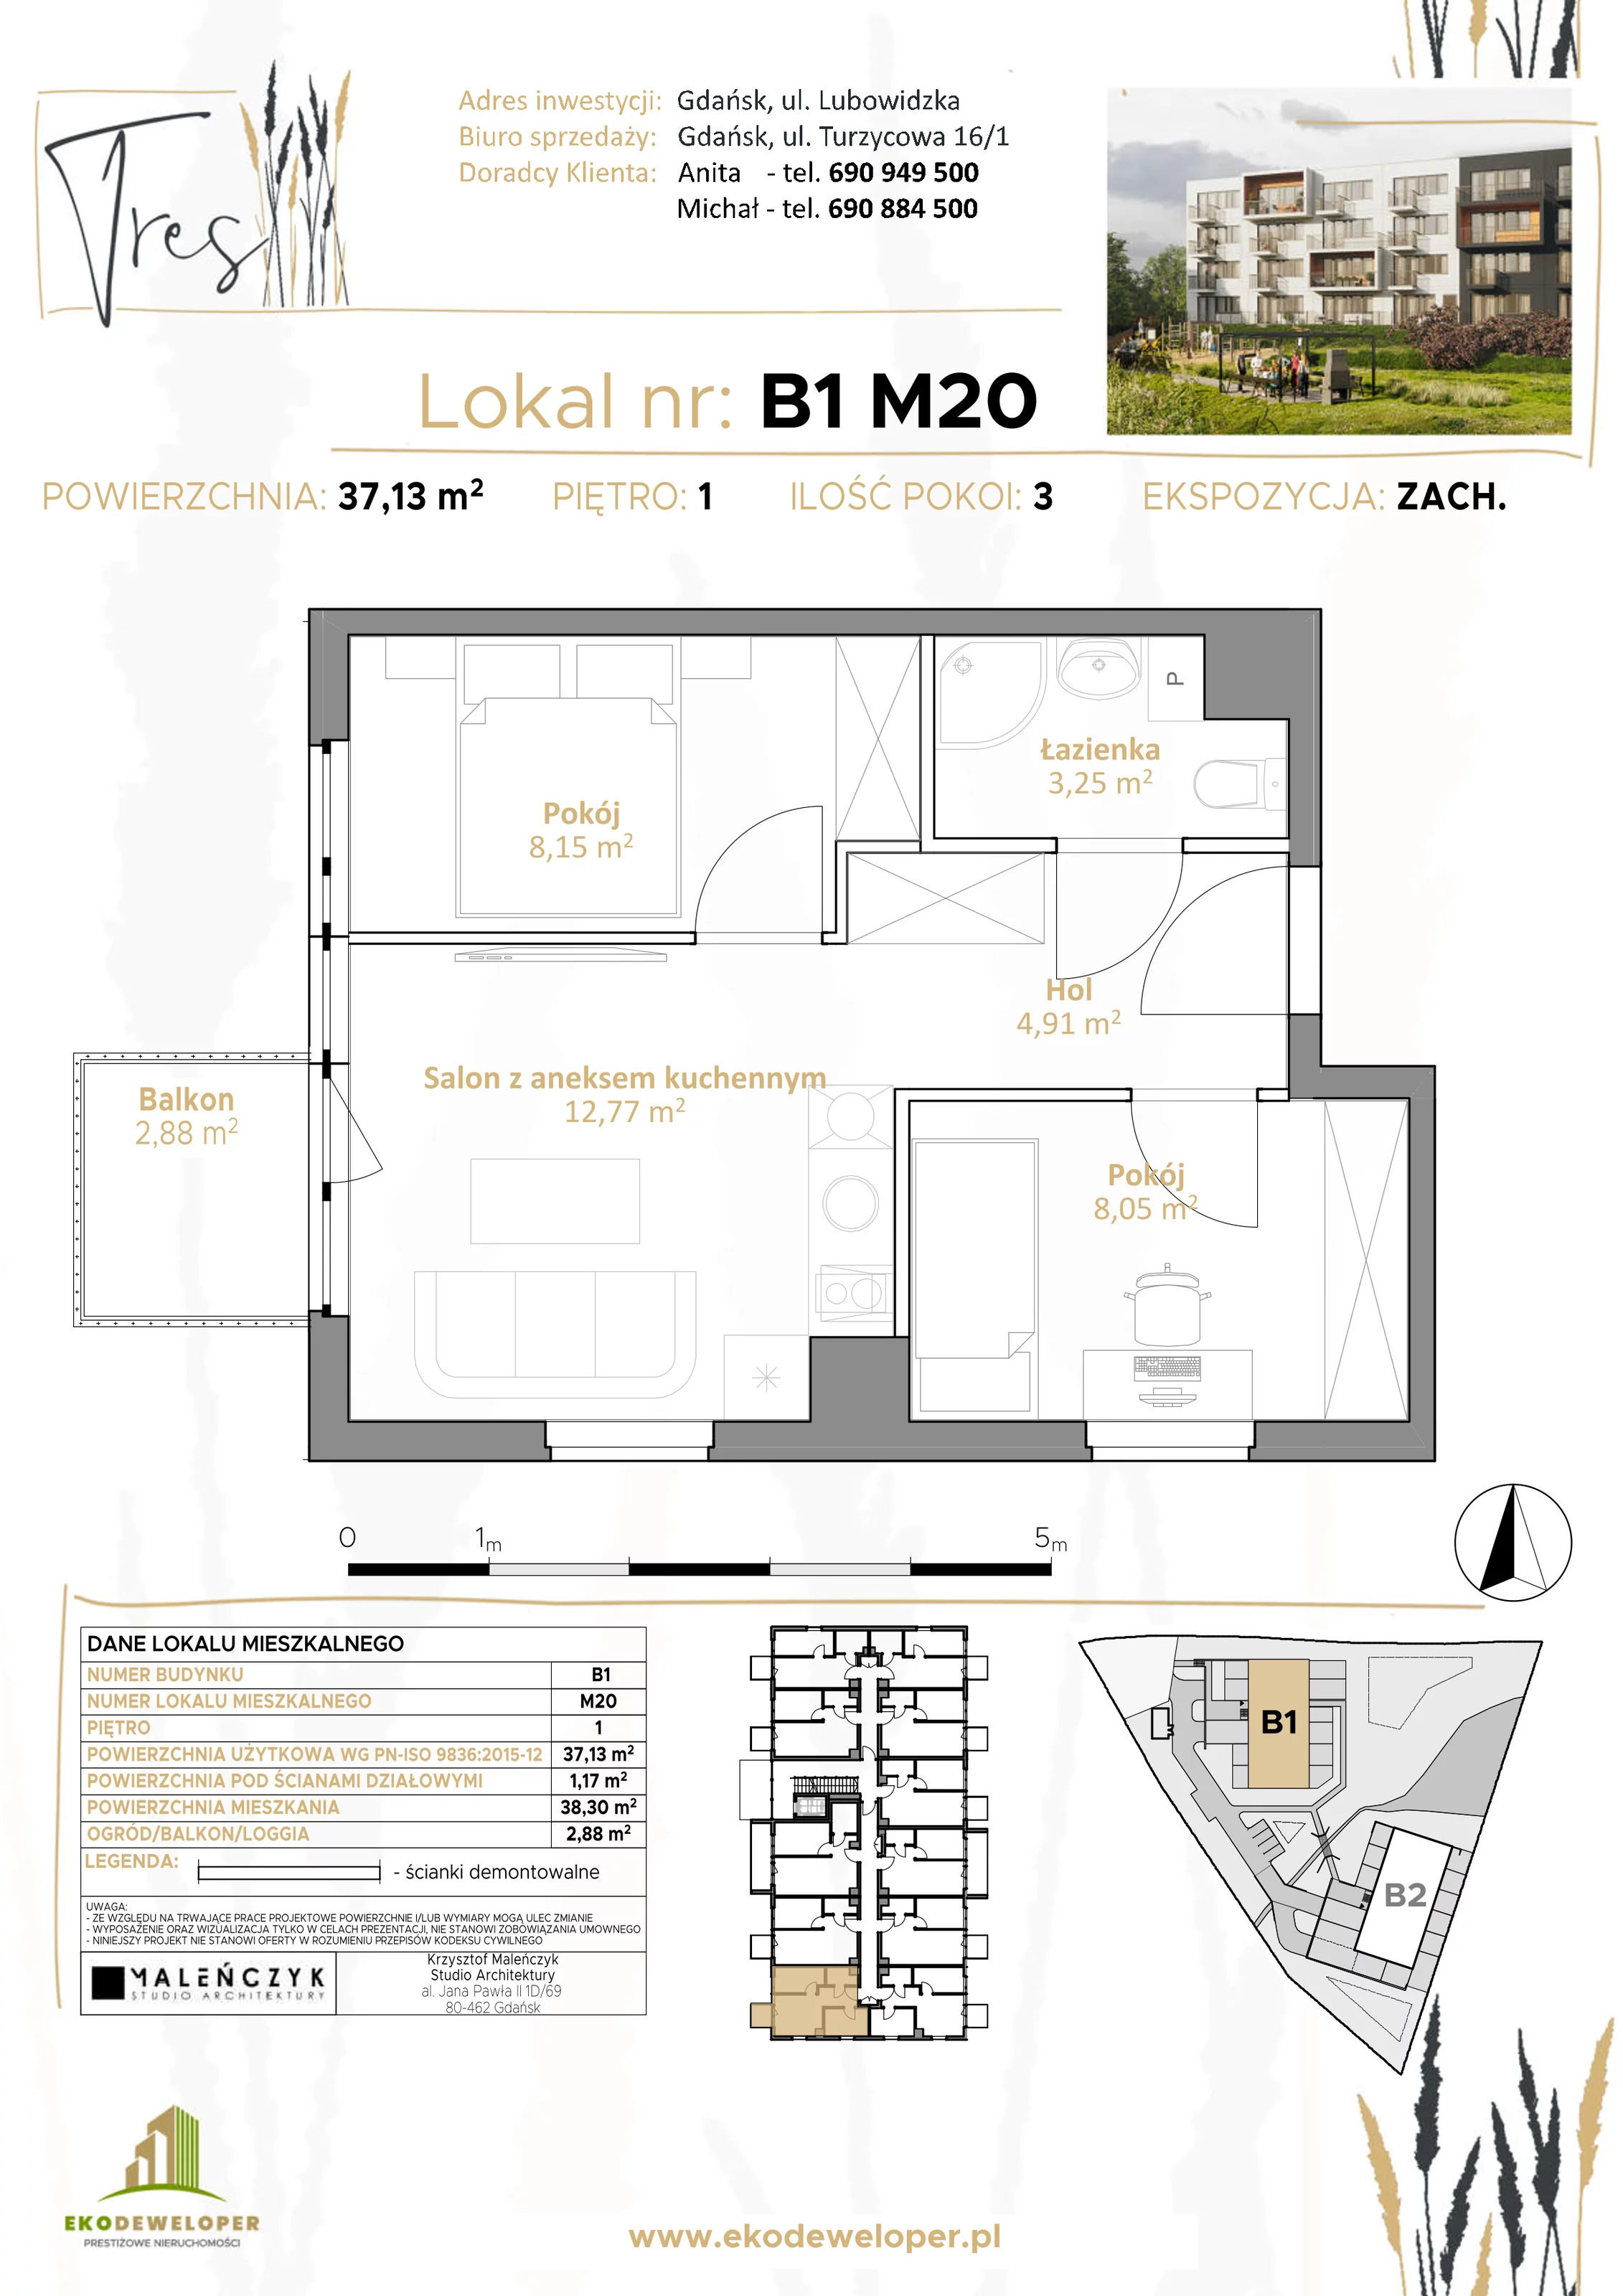 Mieszkanie 37,13 m², piętro 1, oferta nr B1.M20, Tres, Gdańsk, Jasień, ul. Lubowidzka